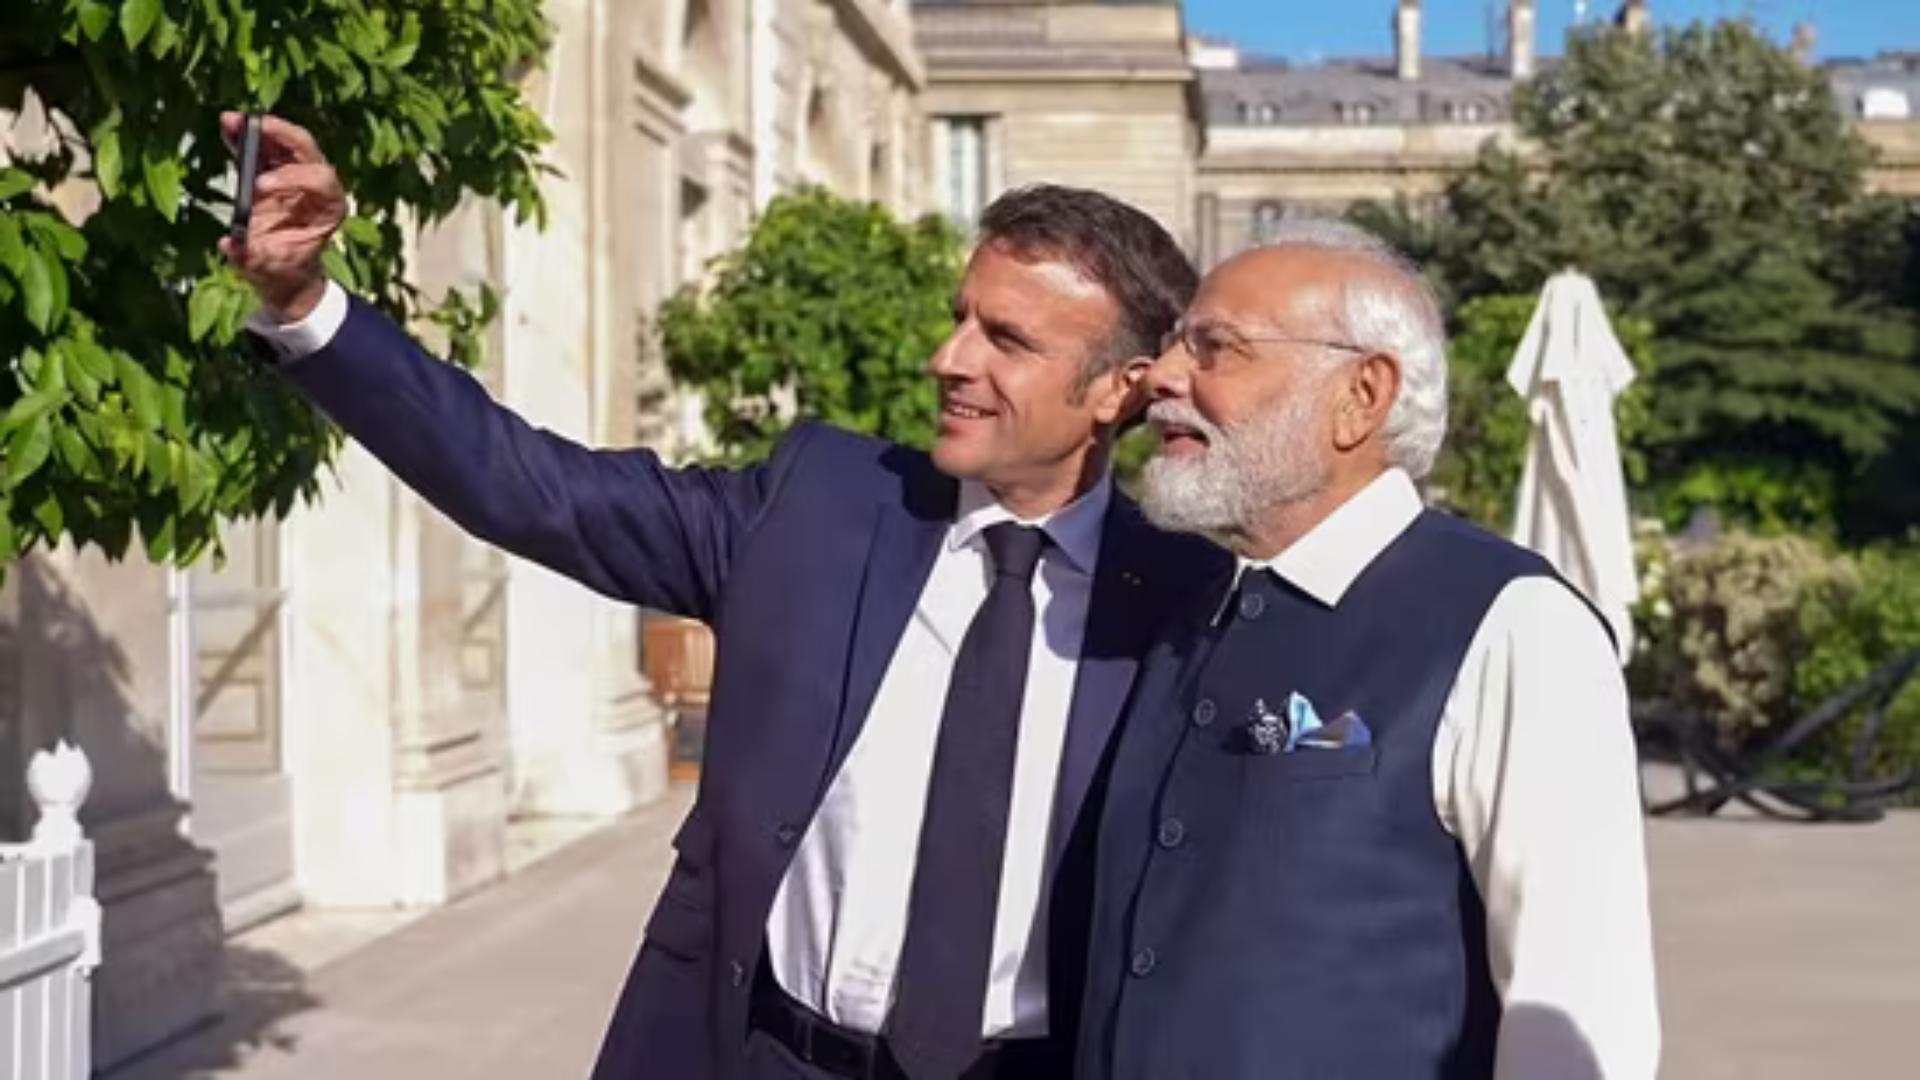 Breaking: PM Modi Holds Bilataral Talks With French Prez Macron In Italy